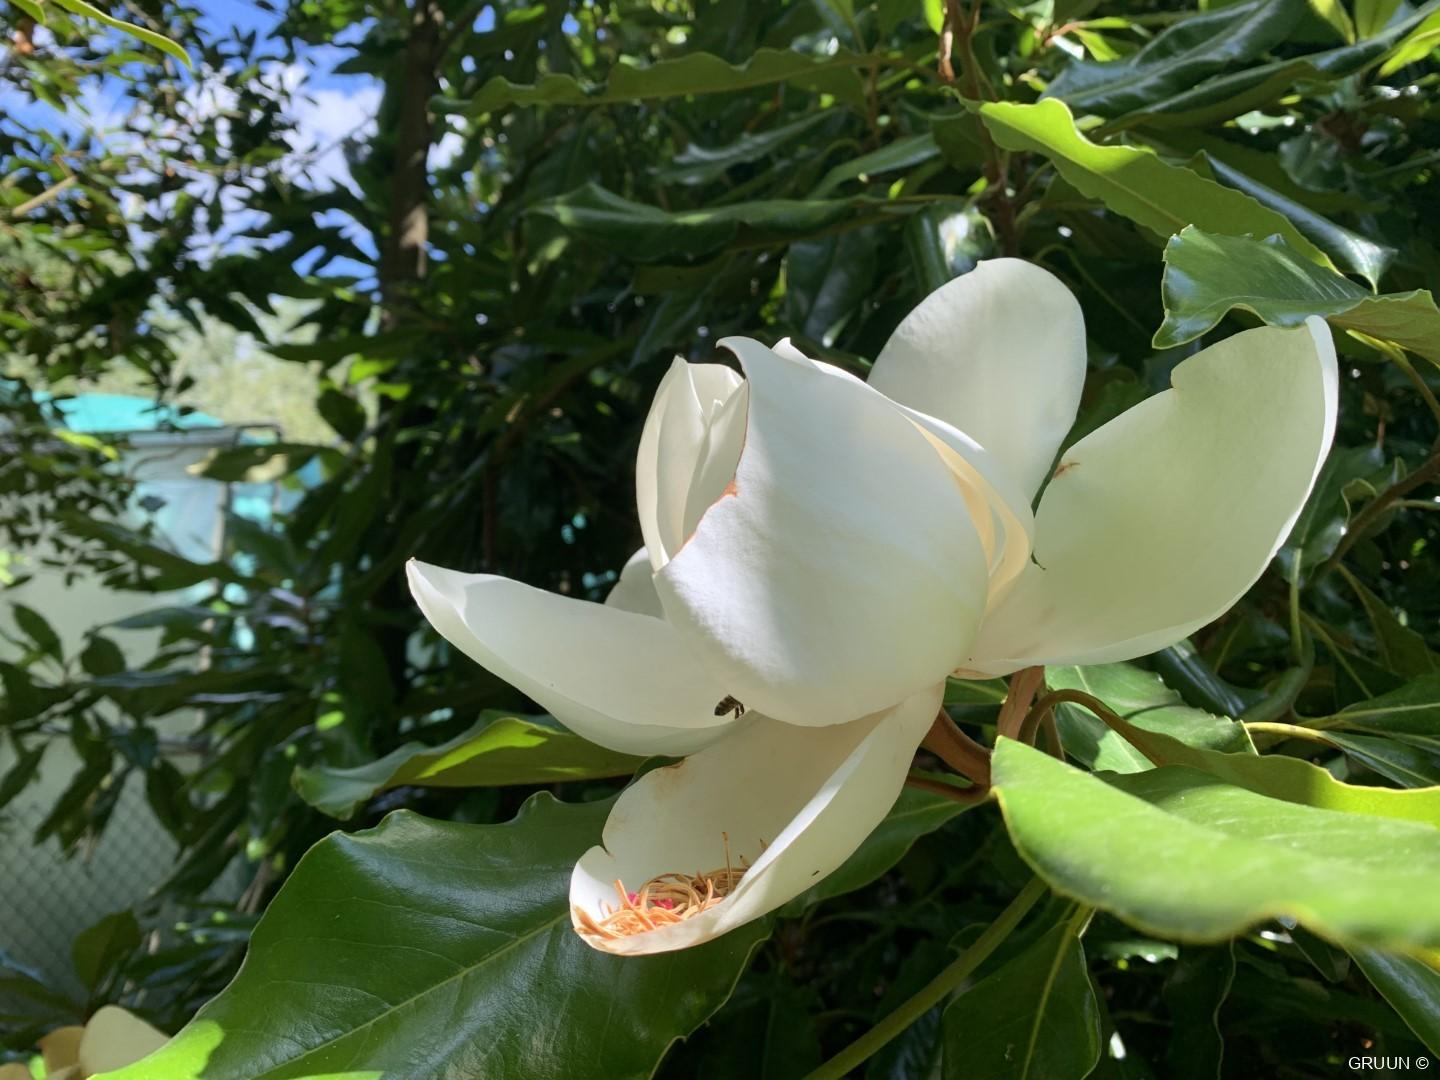 Magnolia, voorjaarsbloeier met eetbare bloemen